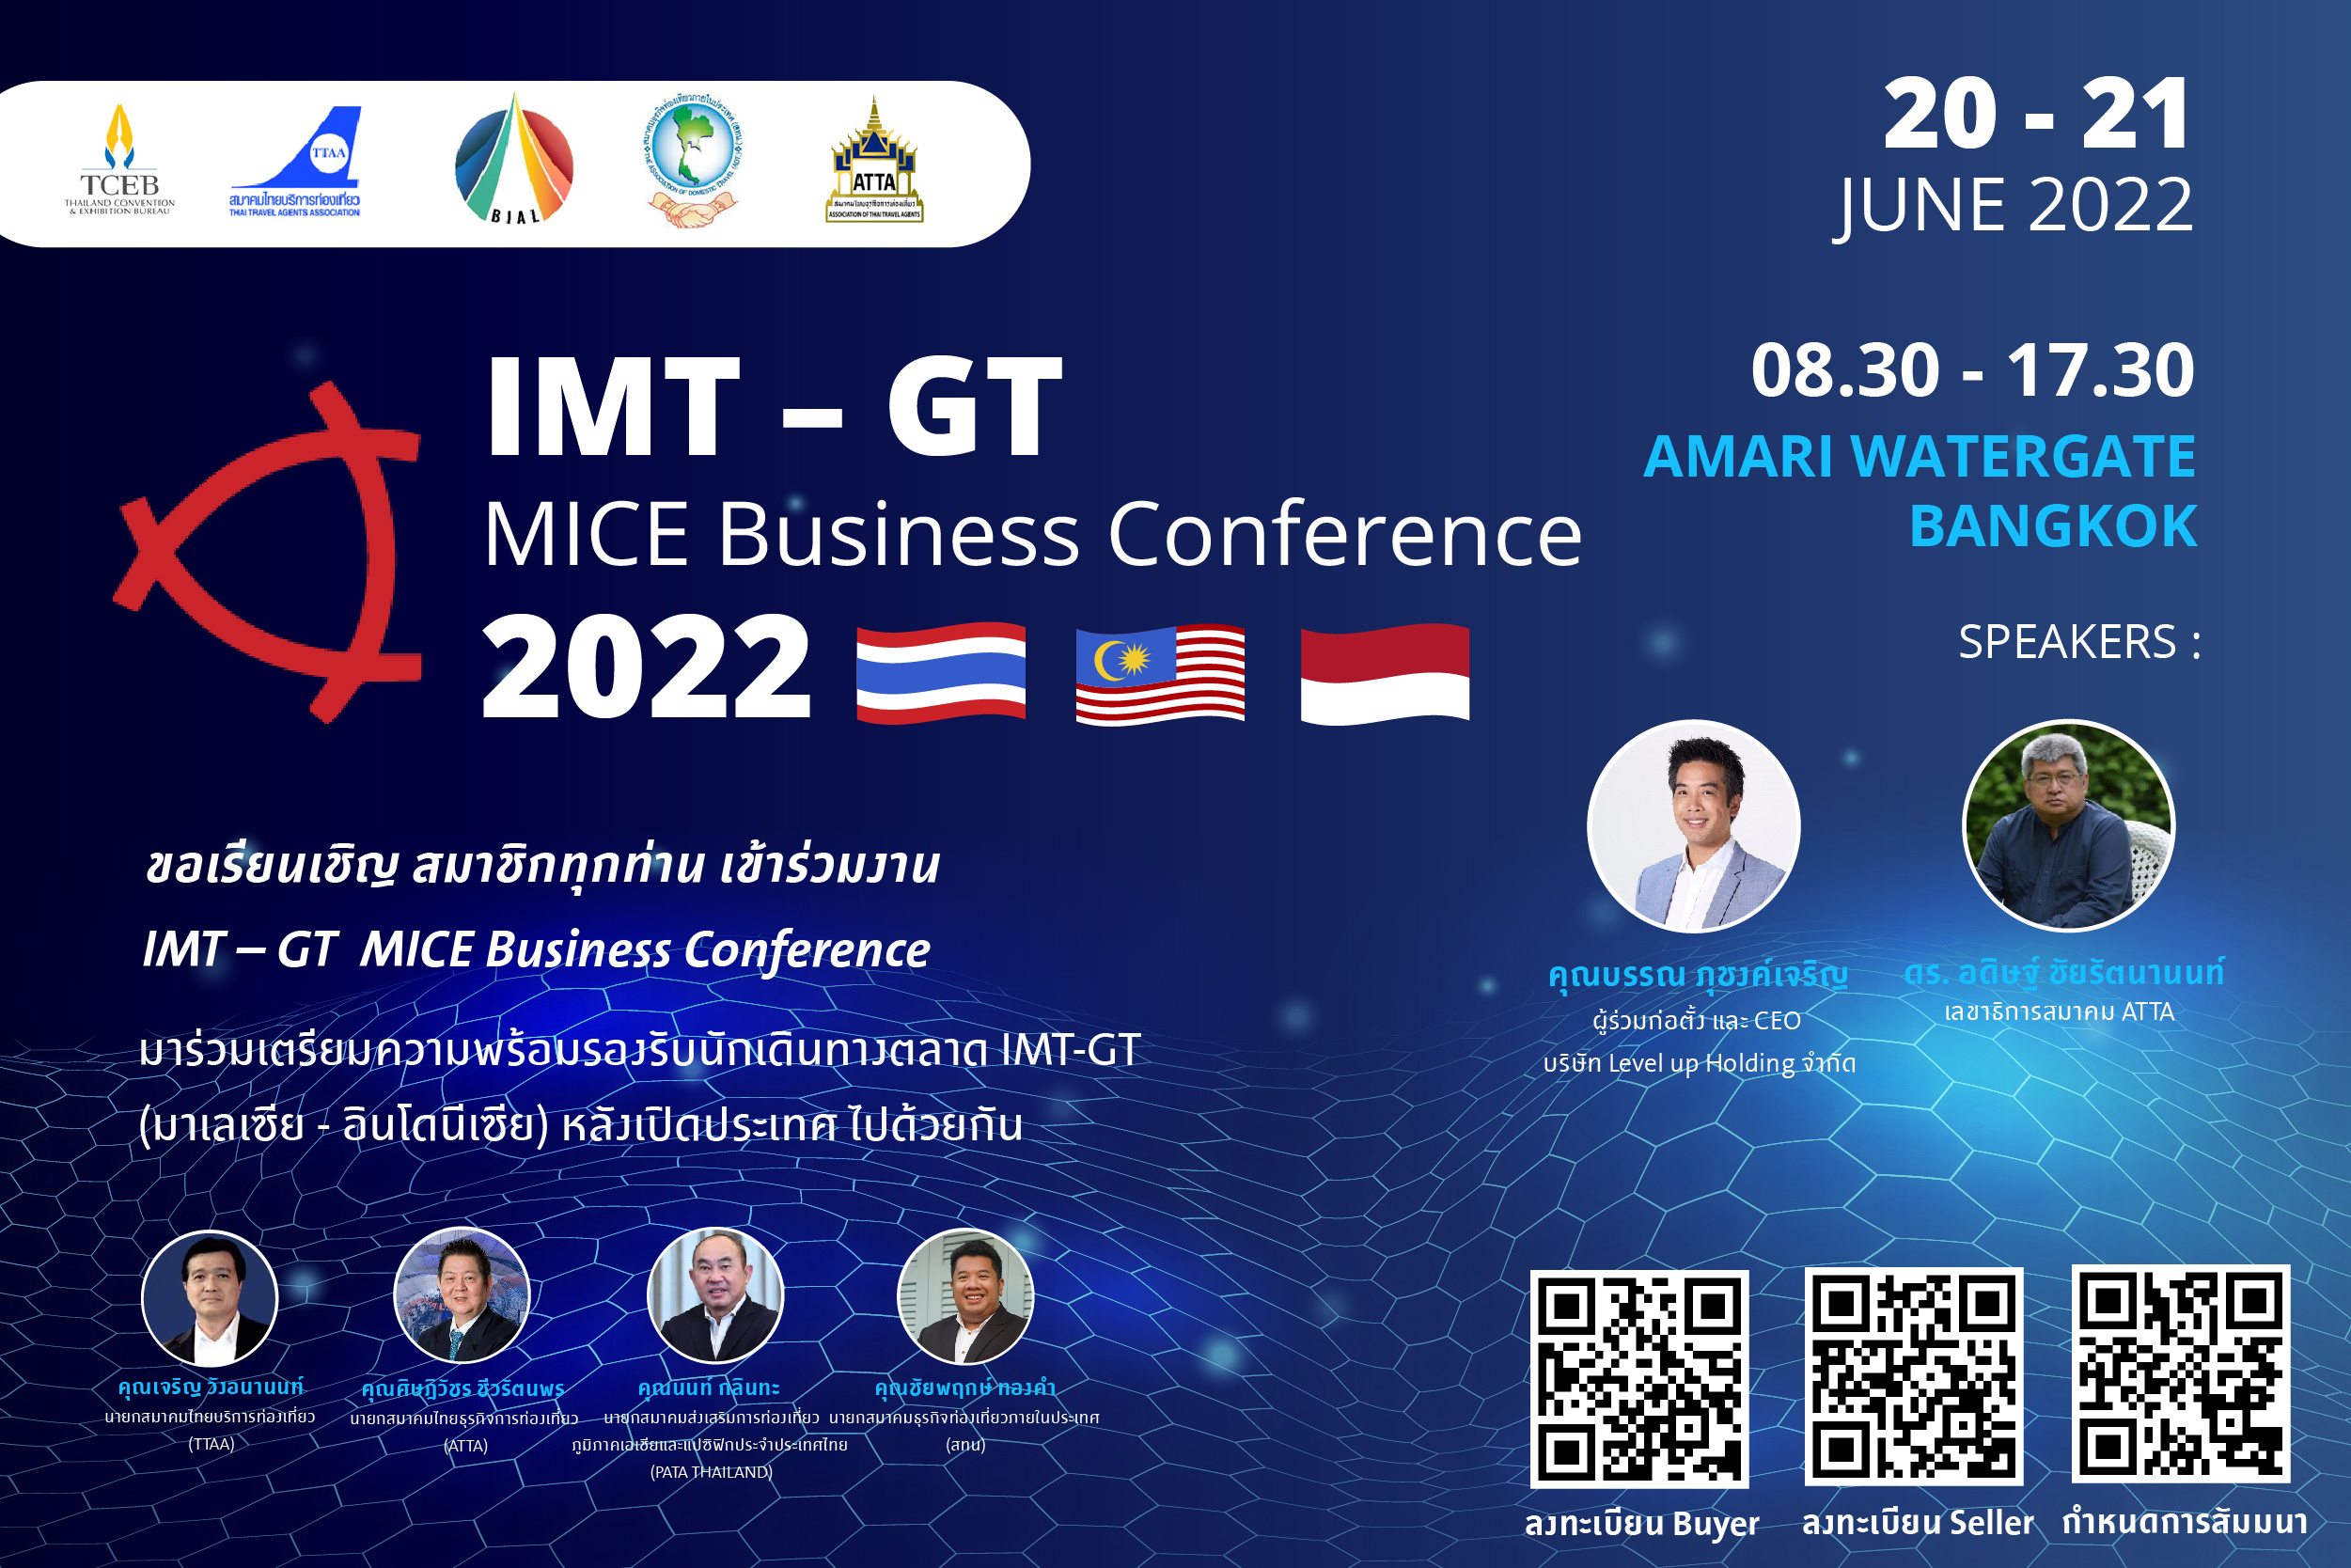 สทน. ขอเรียนเชิญสมาชิกเข้าร่วมงาน IMT – GT  MICE Business Conference